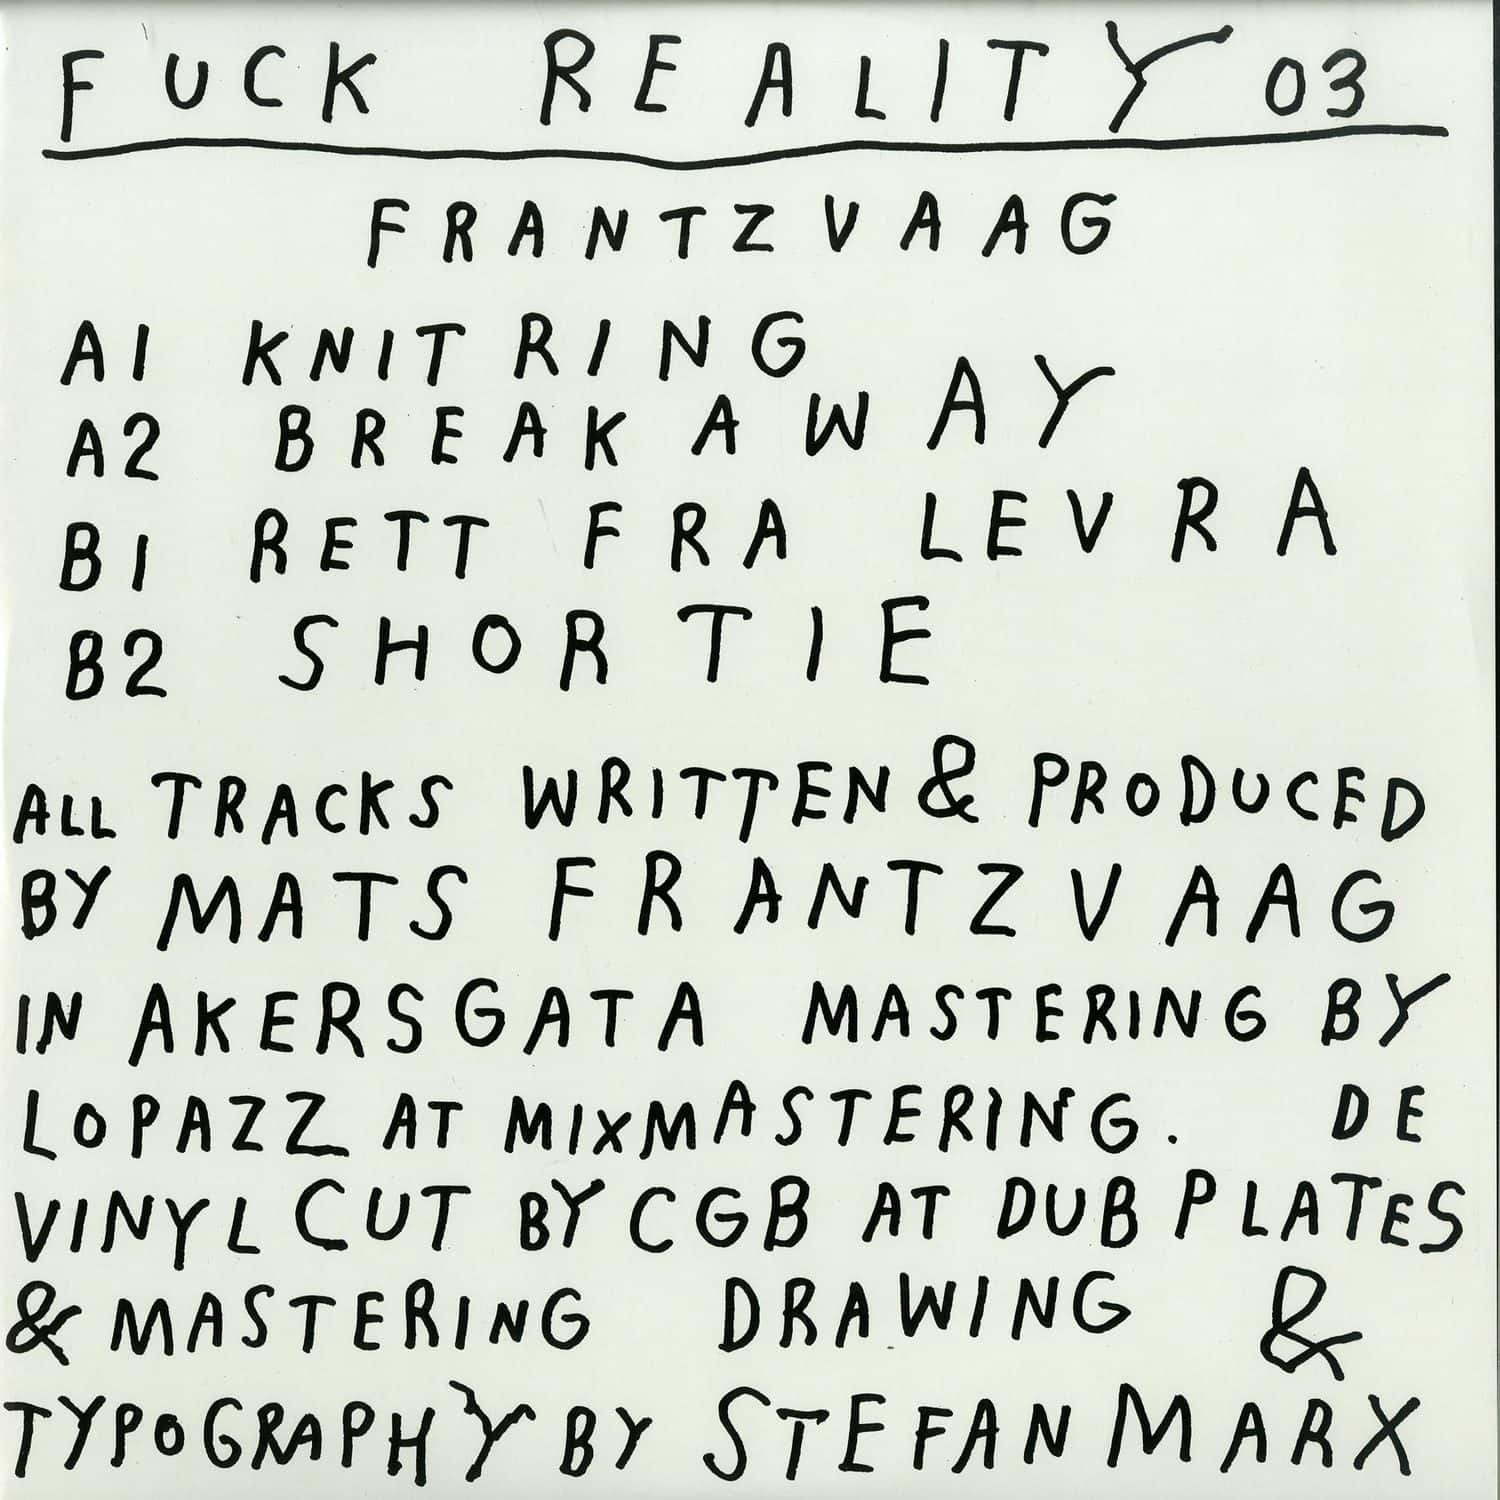 Frantzvaag - FUCK REALITY 03